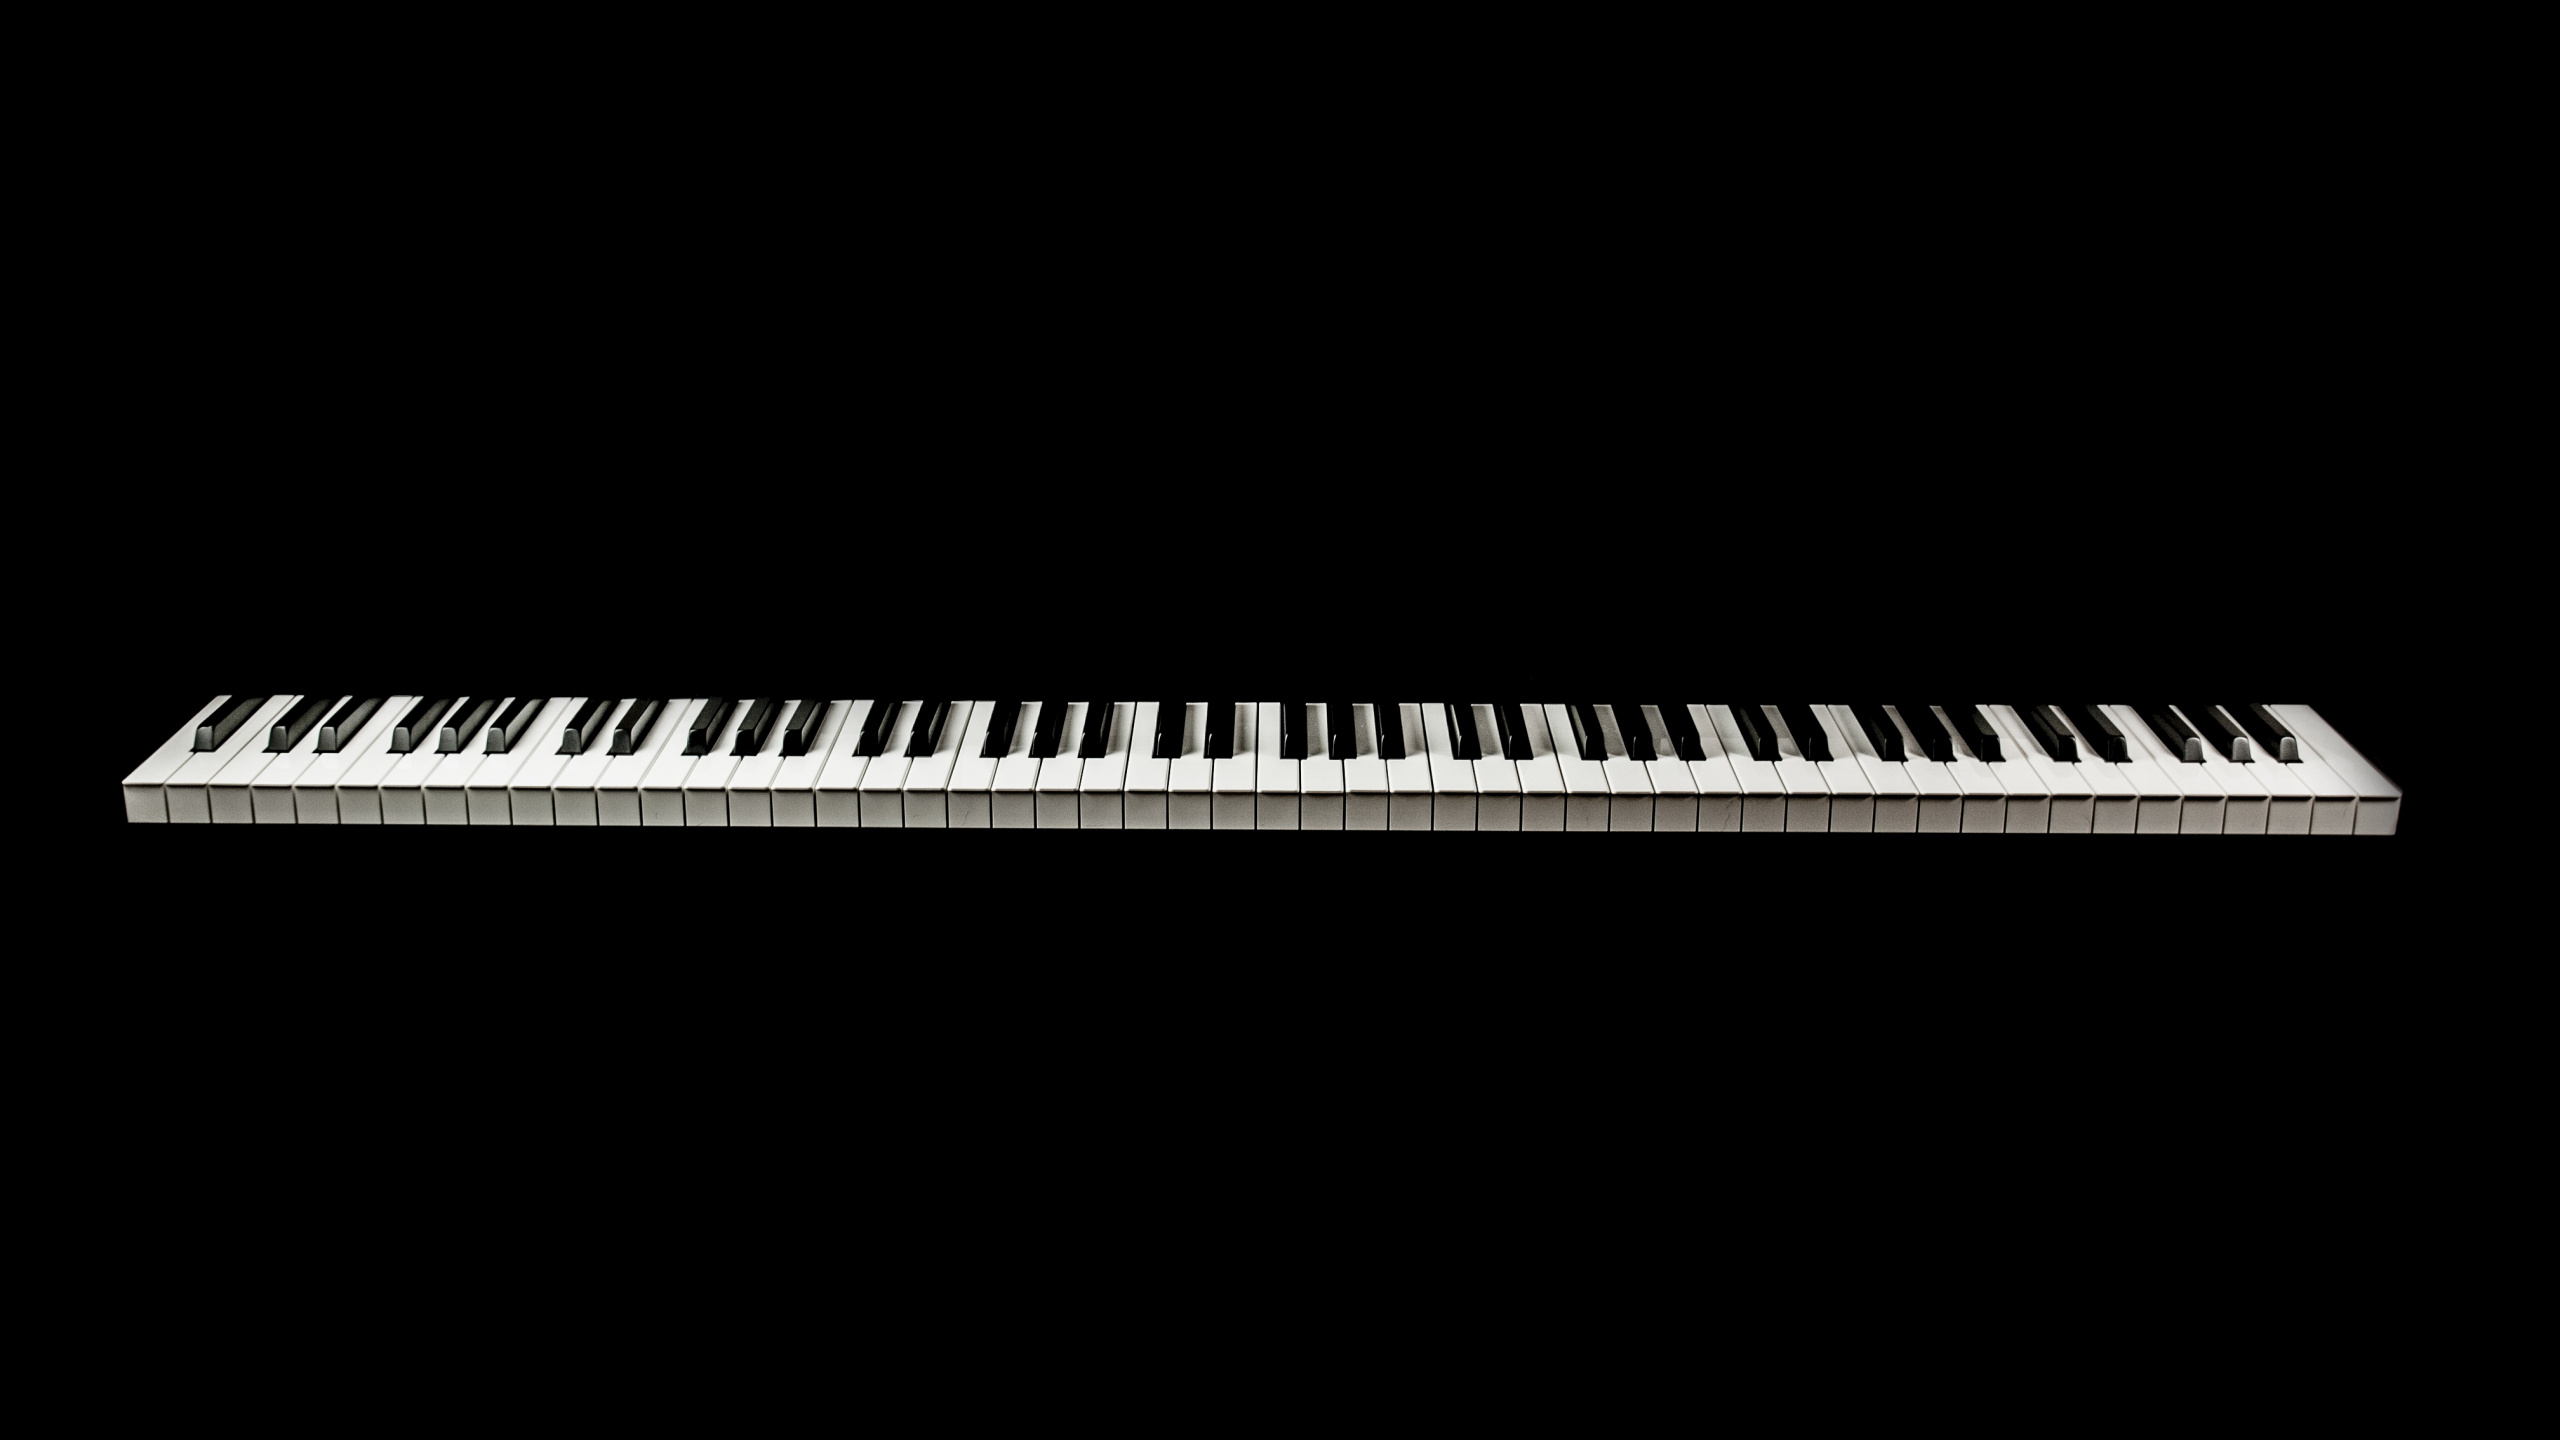 Musikalische Tastatur, Digitalpiano, E-piano, Klavier, Tastatur. Wallpaper in 2560x1440 Resolution